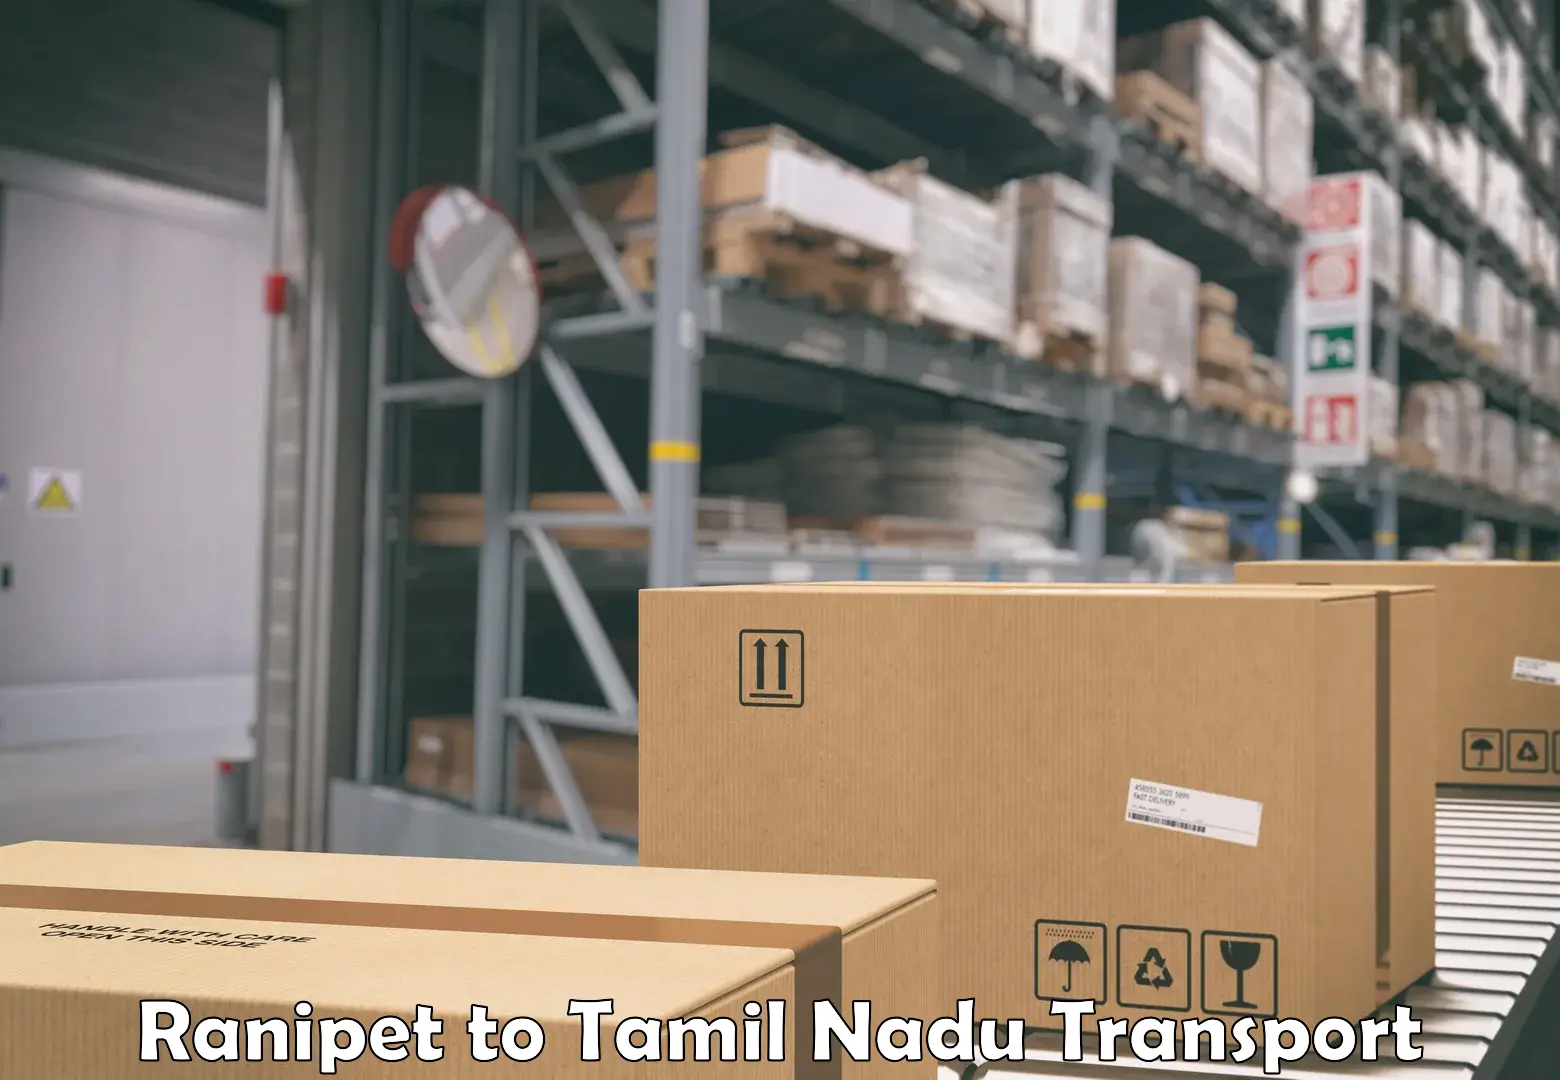 Nearest transport service Ranipet to Tamil Nadu